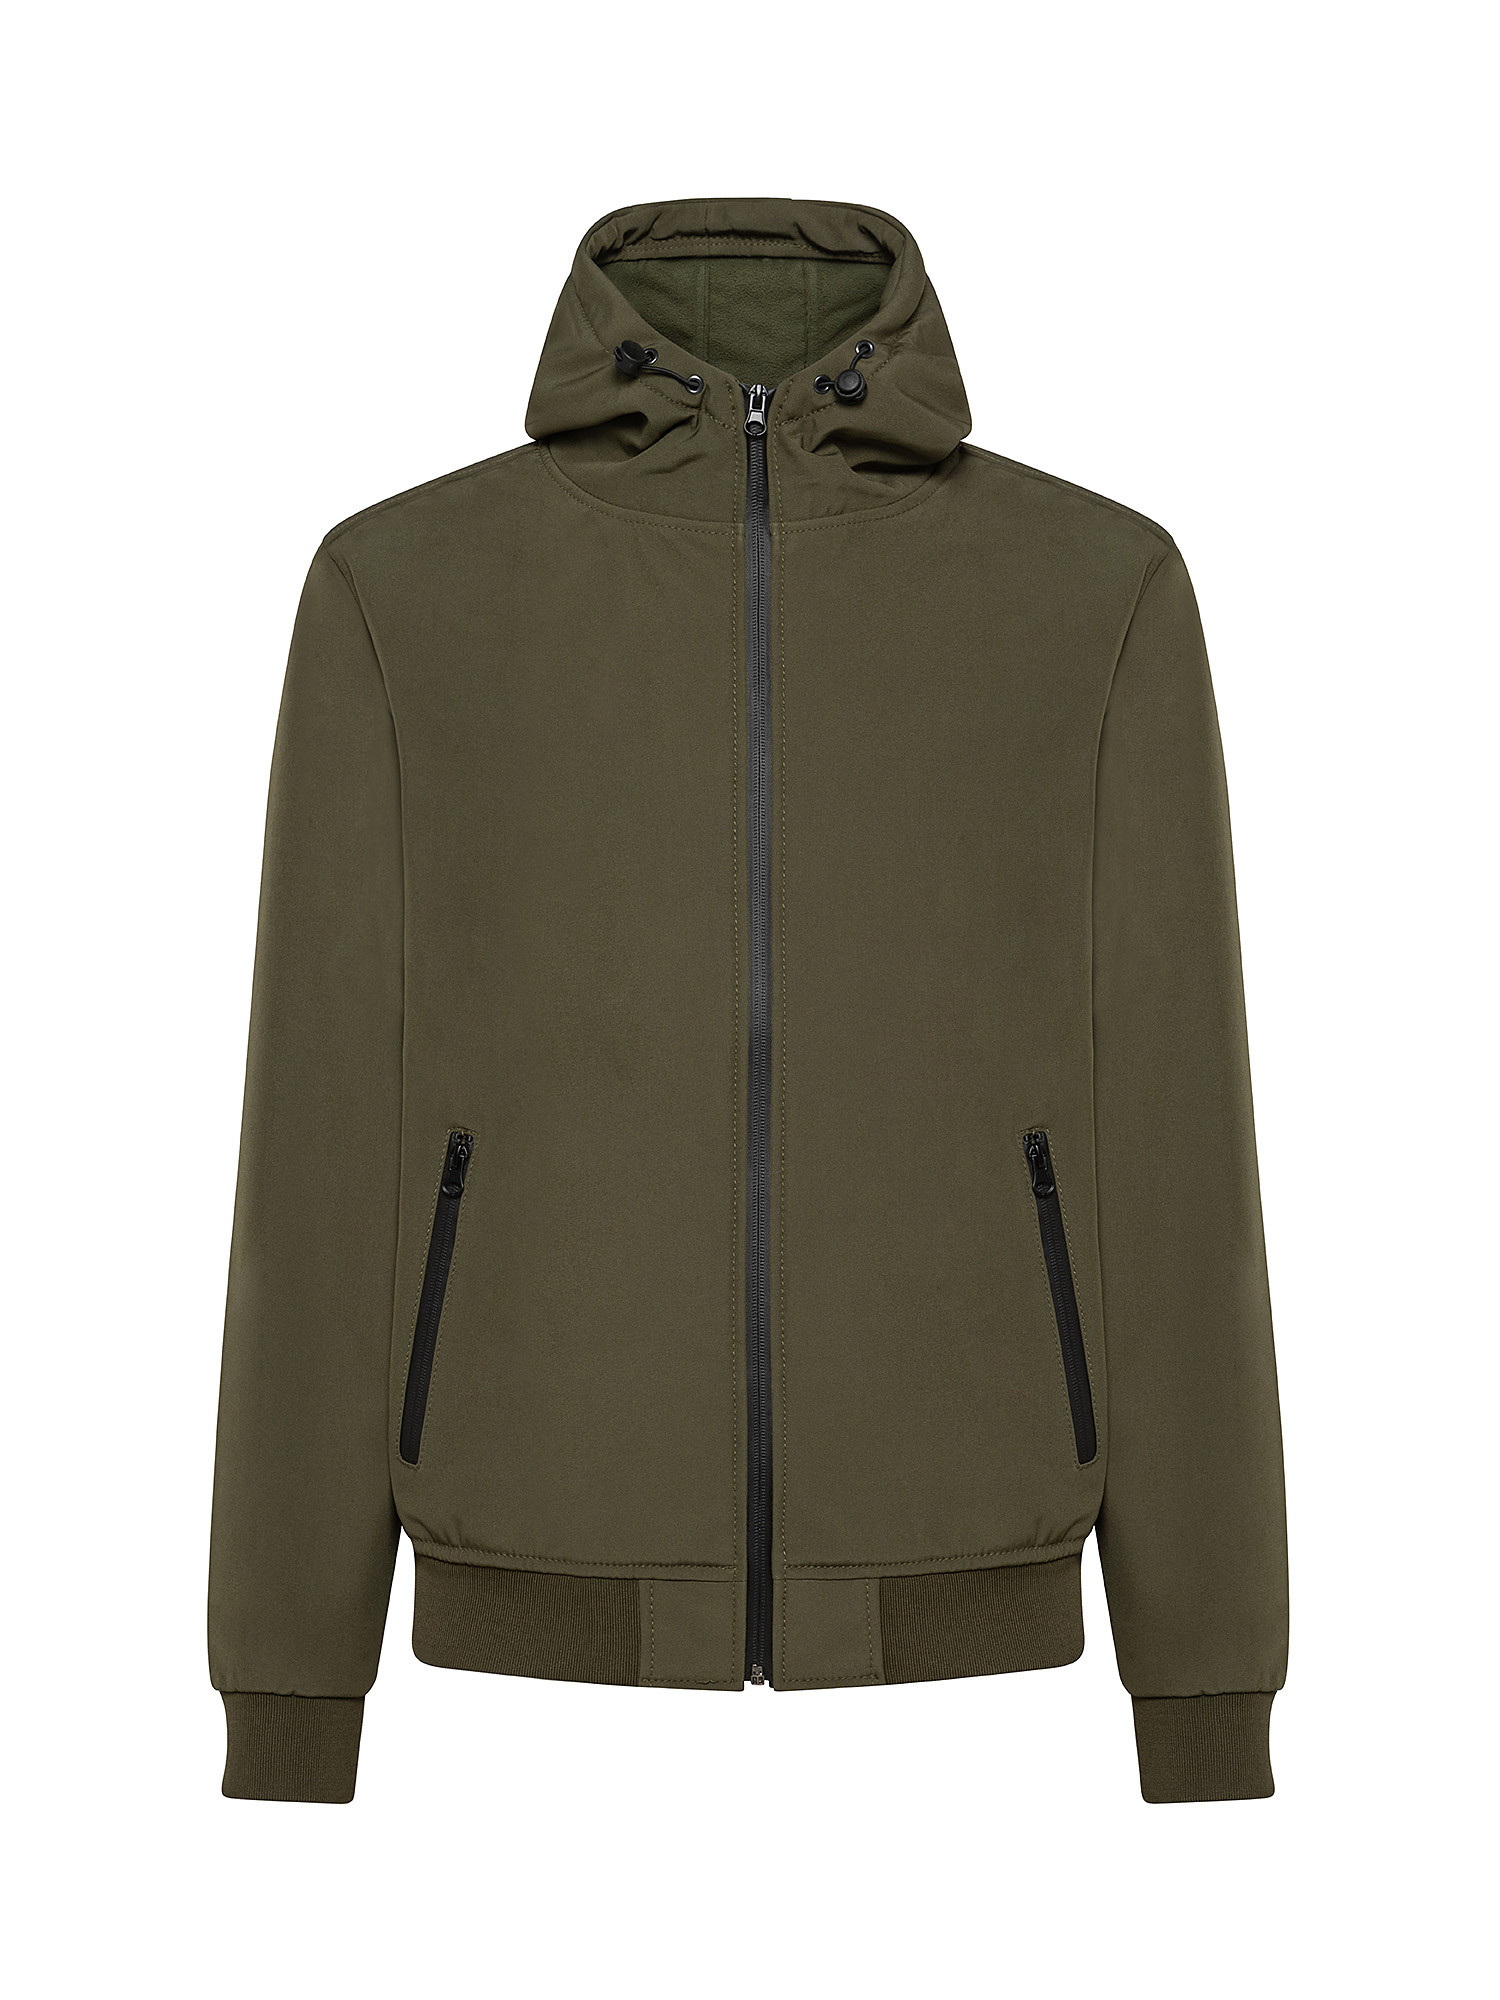 Hooded jacket, Olive Green, large image number 0